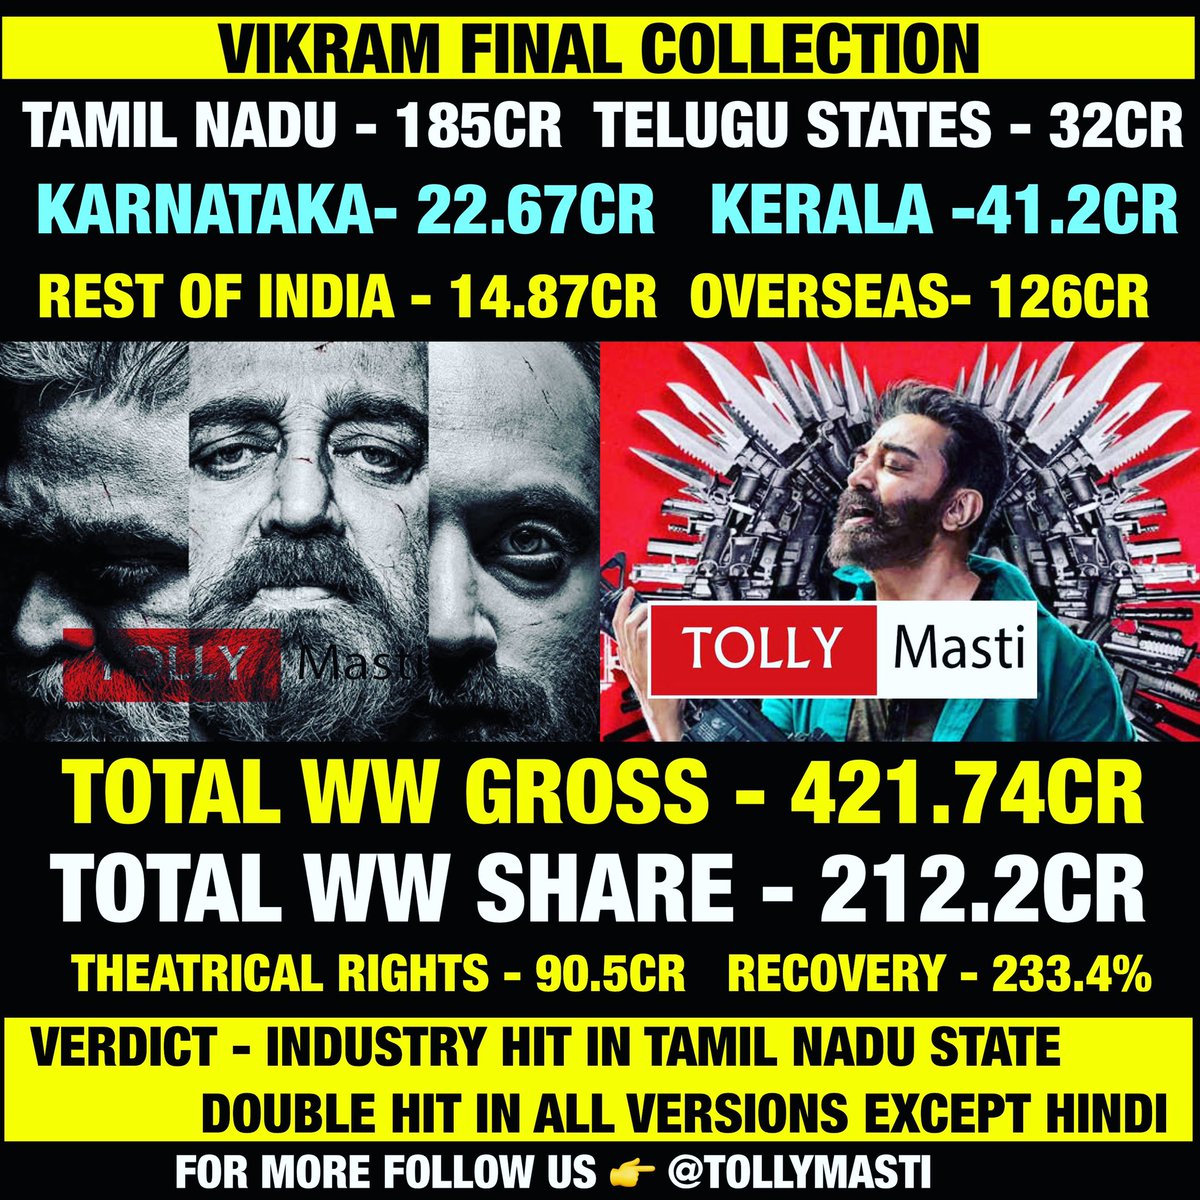 Blockbuster Vikram ✅✅
#Vikram #vikramcollections #KamalHaasan #VijaySethupathi #FahadFaasil 
Follow us 👉 @tollymasti